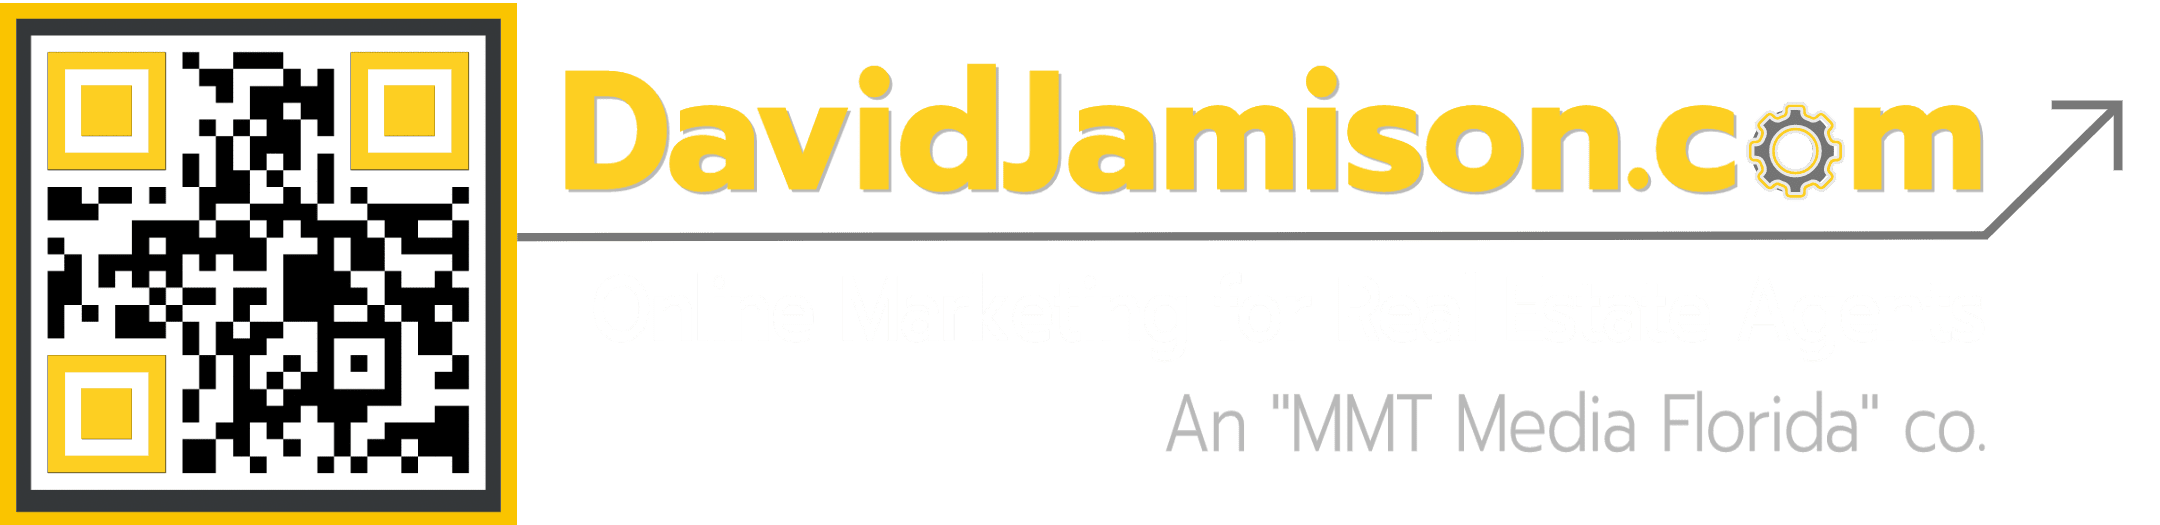 DavidJamison.com Logo (Update LF)